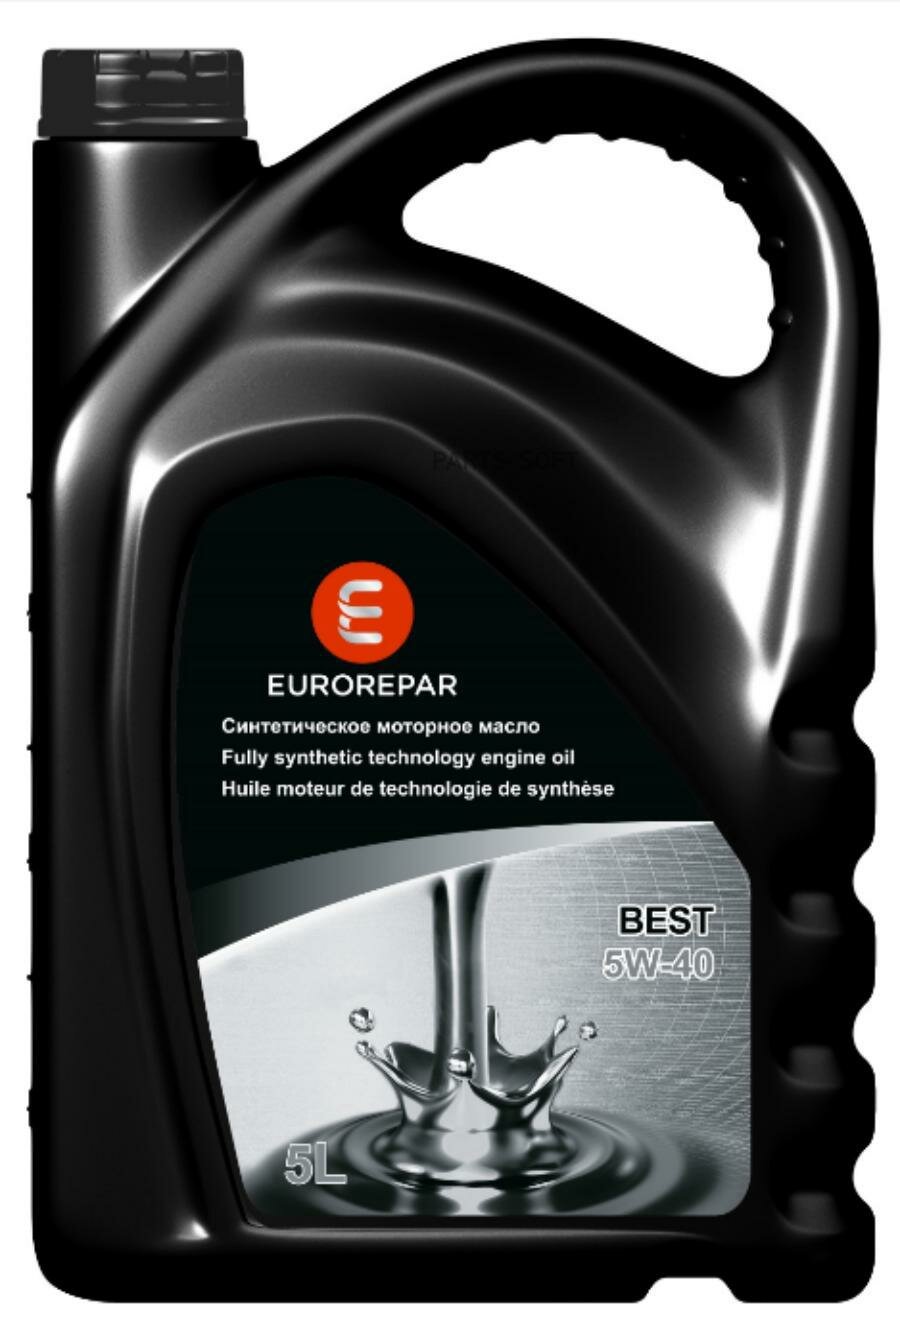 Синтетическое моторное масло Eurorepar Best 5W-40